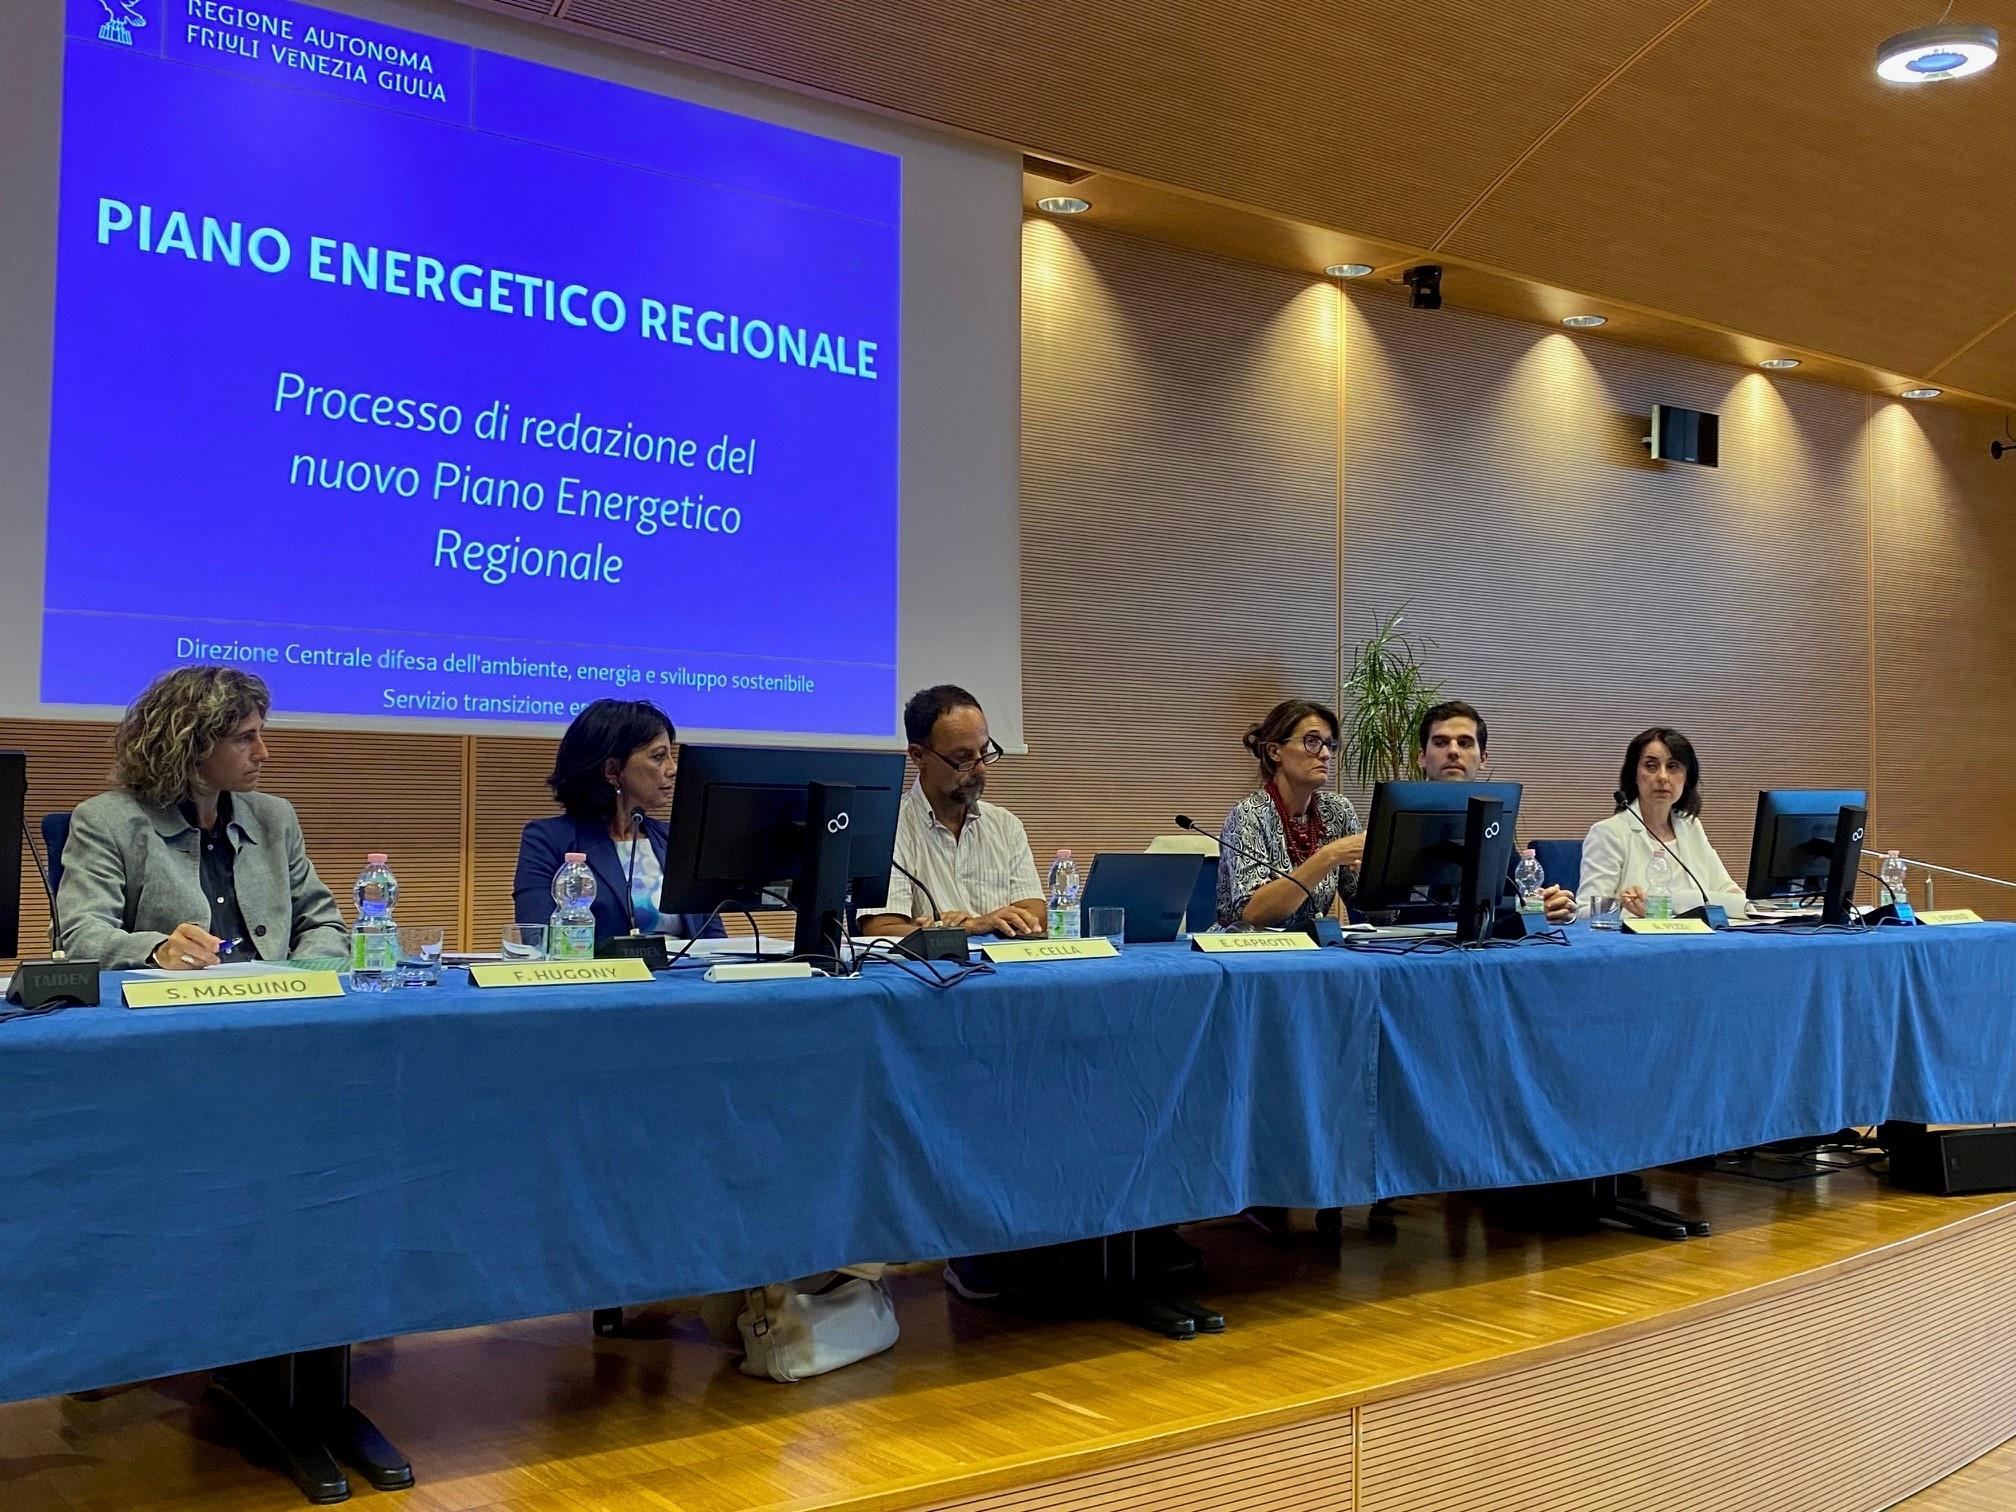 Il tavolo dei relatori del convegno pubblico organizzato dalla Direzione centrale difesa dell’ambiente, energia e sviluppo sostenibile della Regione Friuli-Venezia Giulia